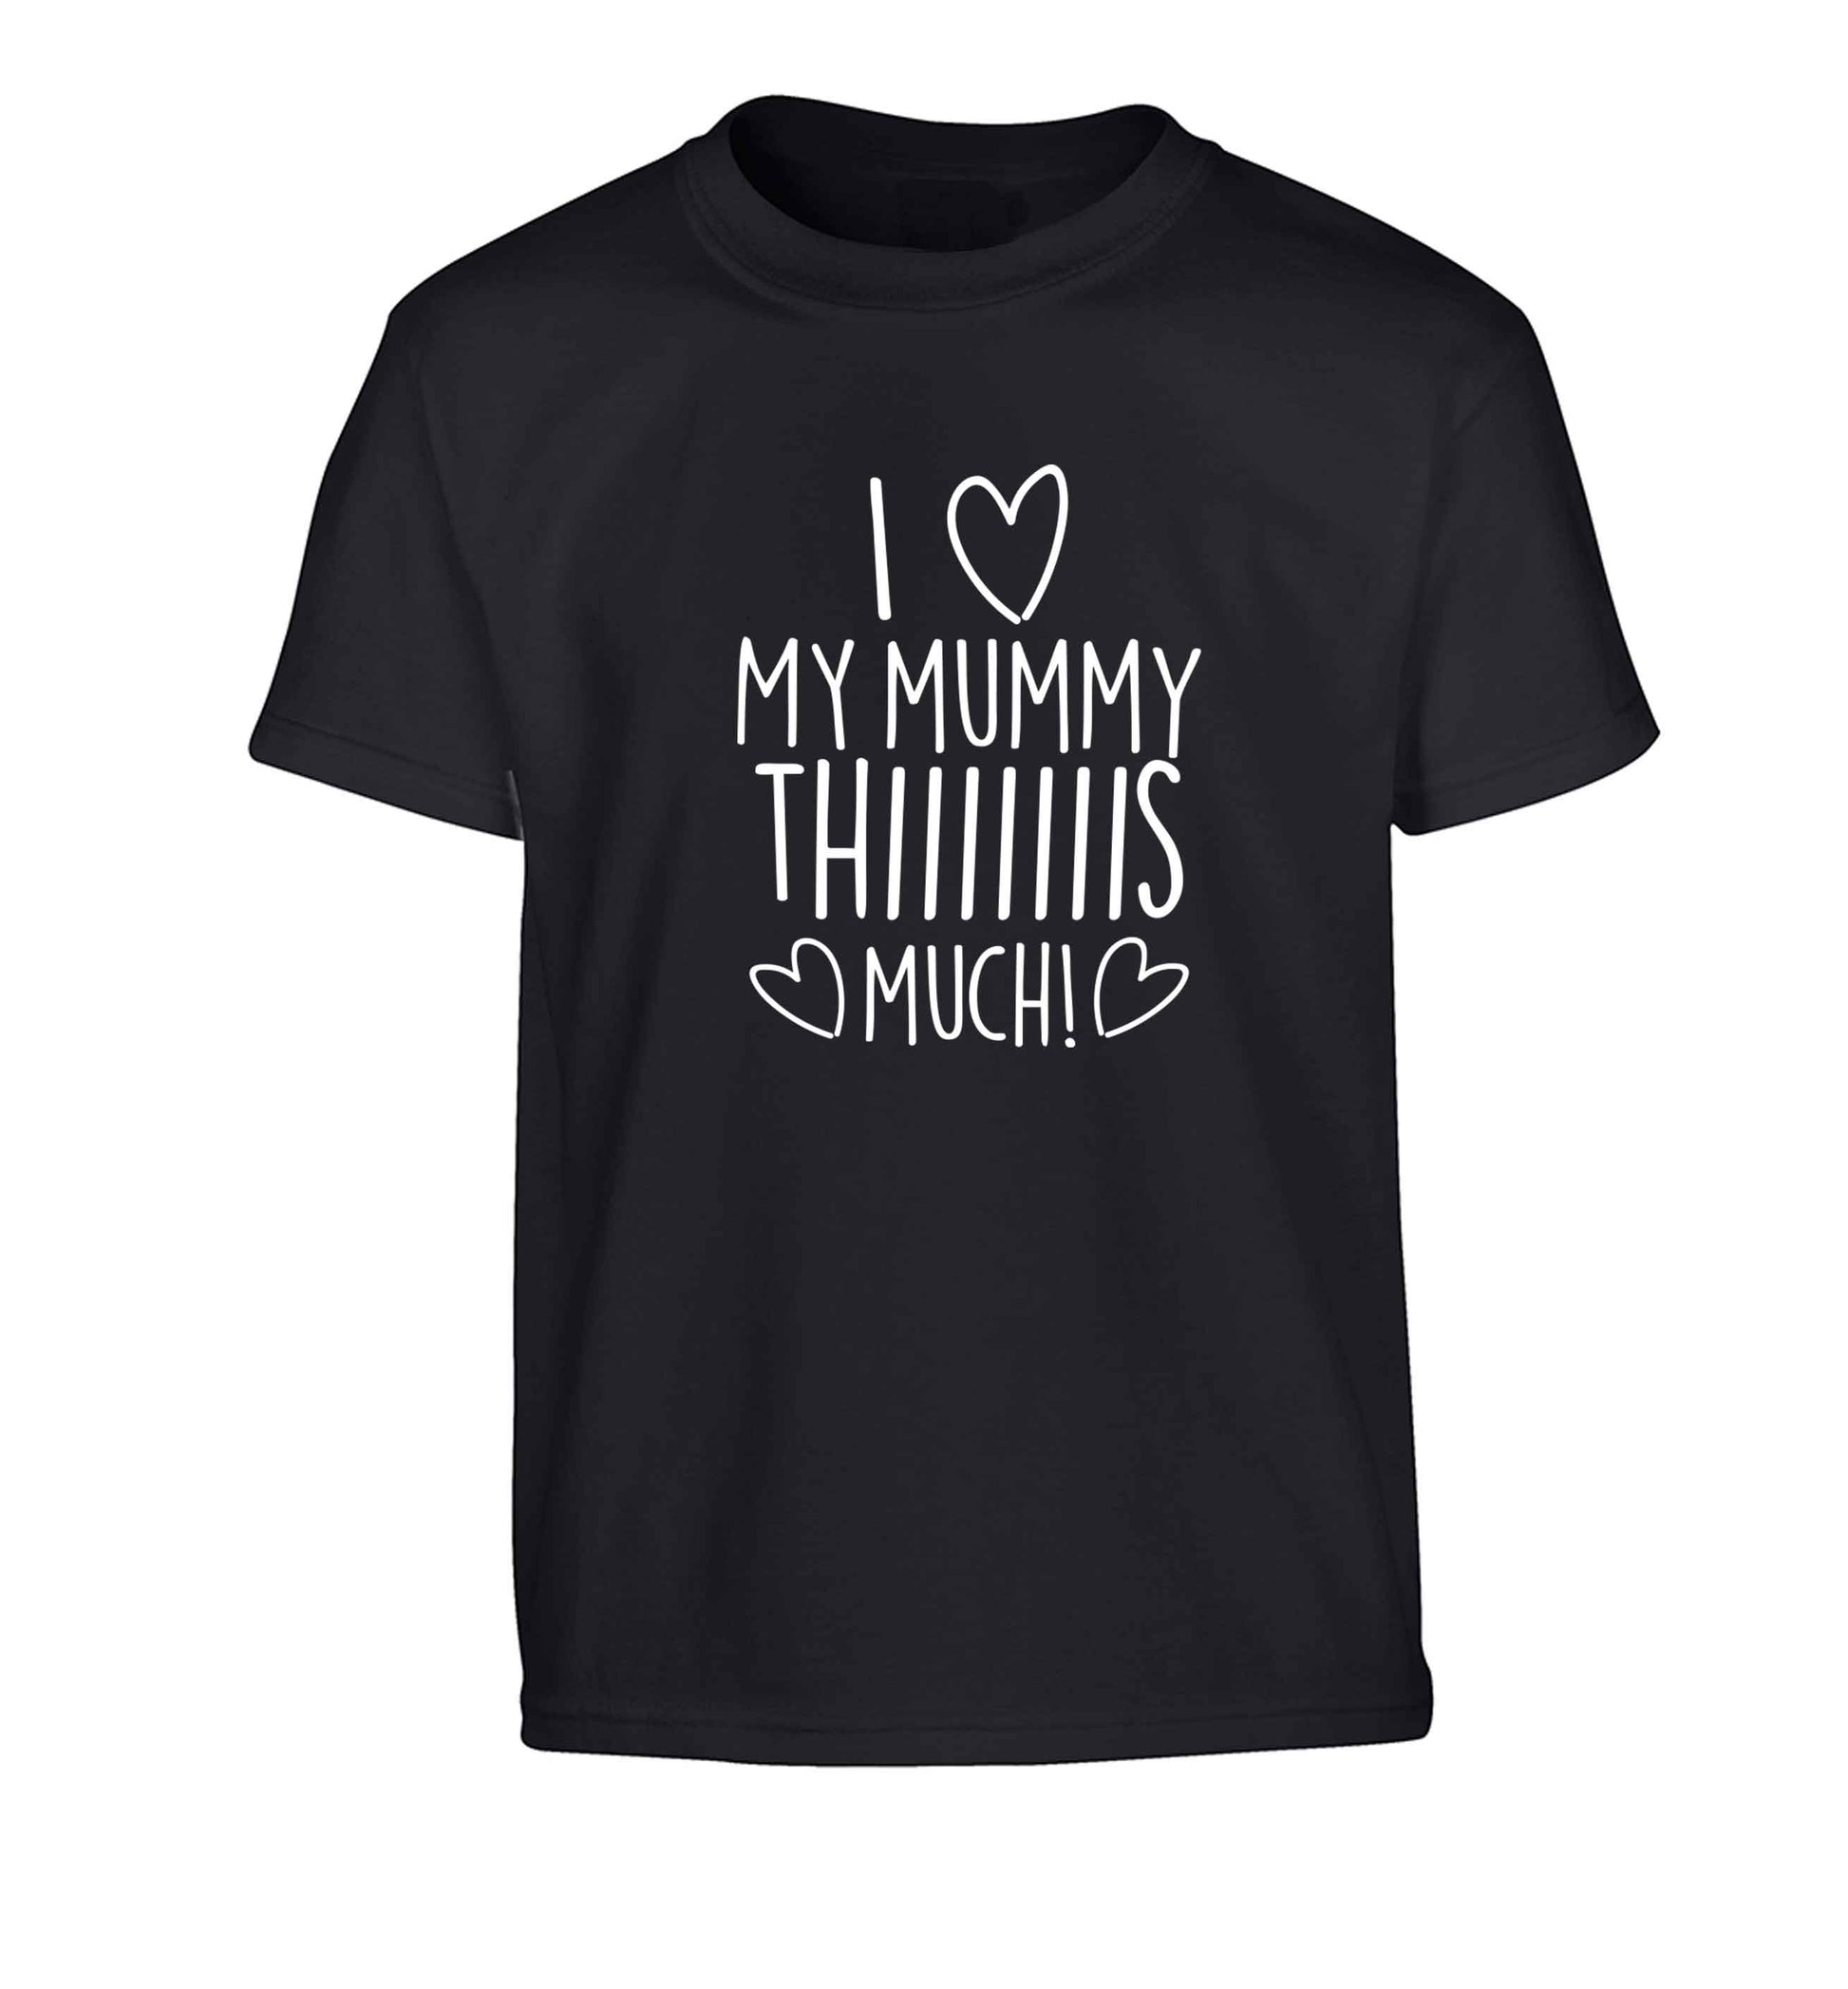 I love my mummy thiiiiis much! Children's black Tshirt 12-13 Years